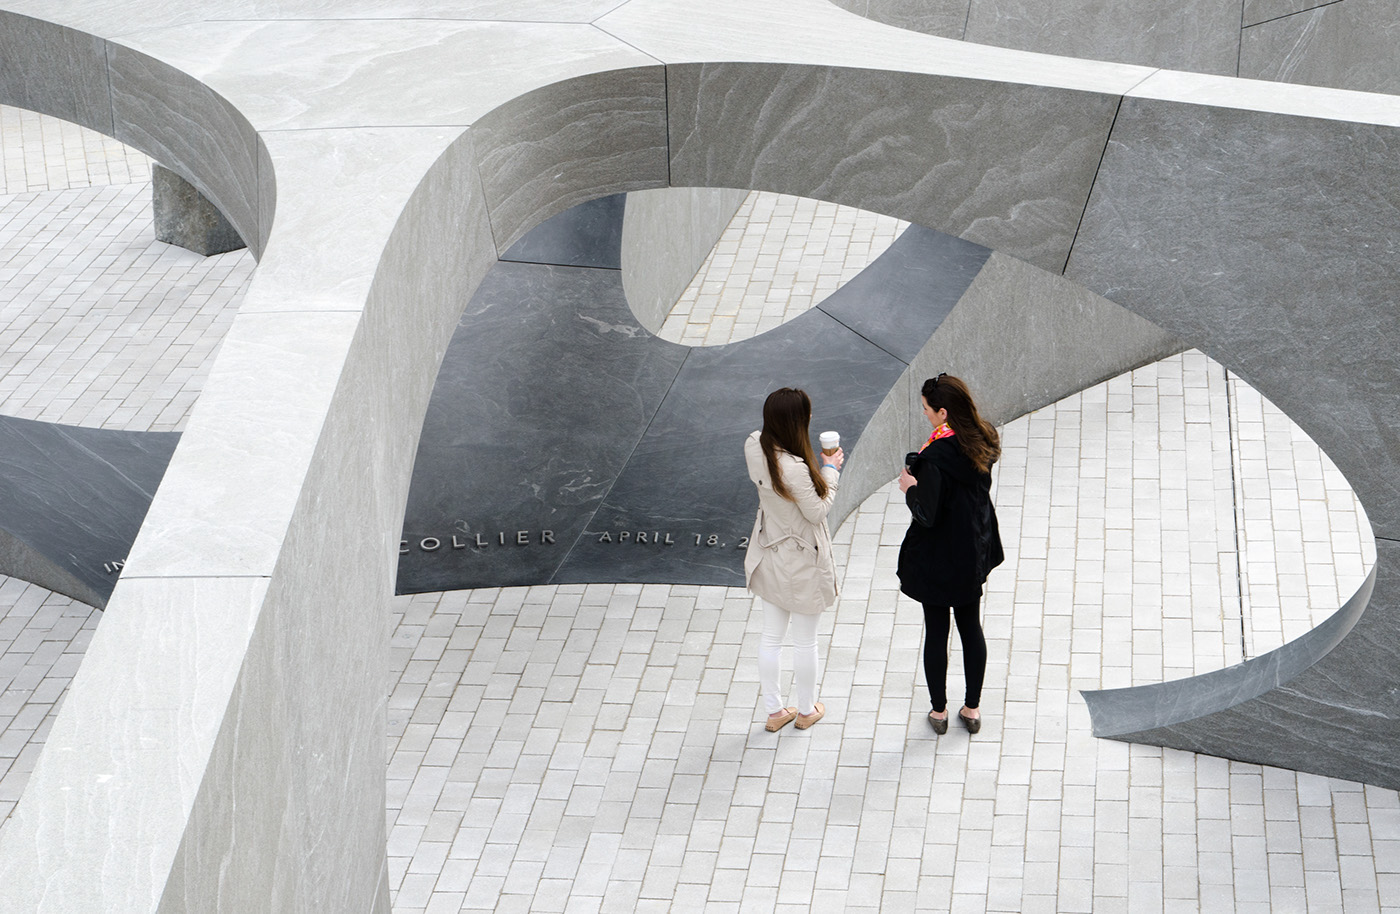 collier cambridge Massachusetts MIT Memorial Howeler+Yoon